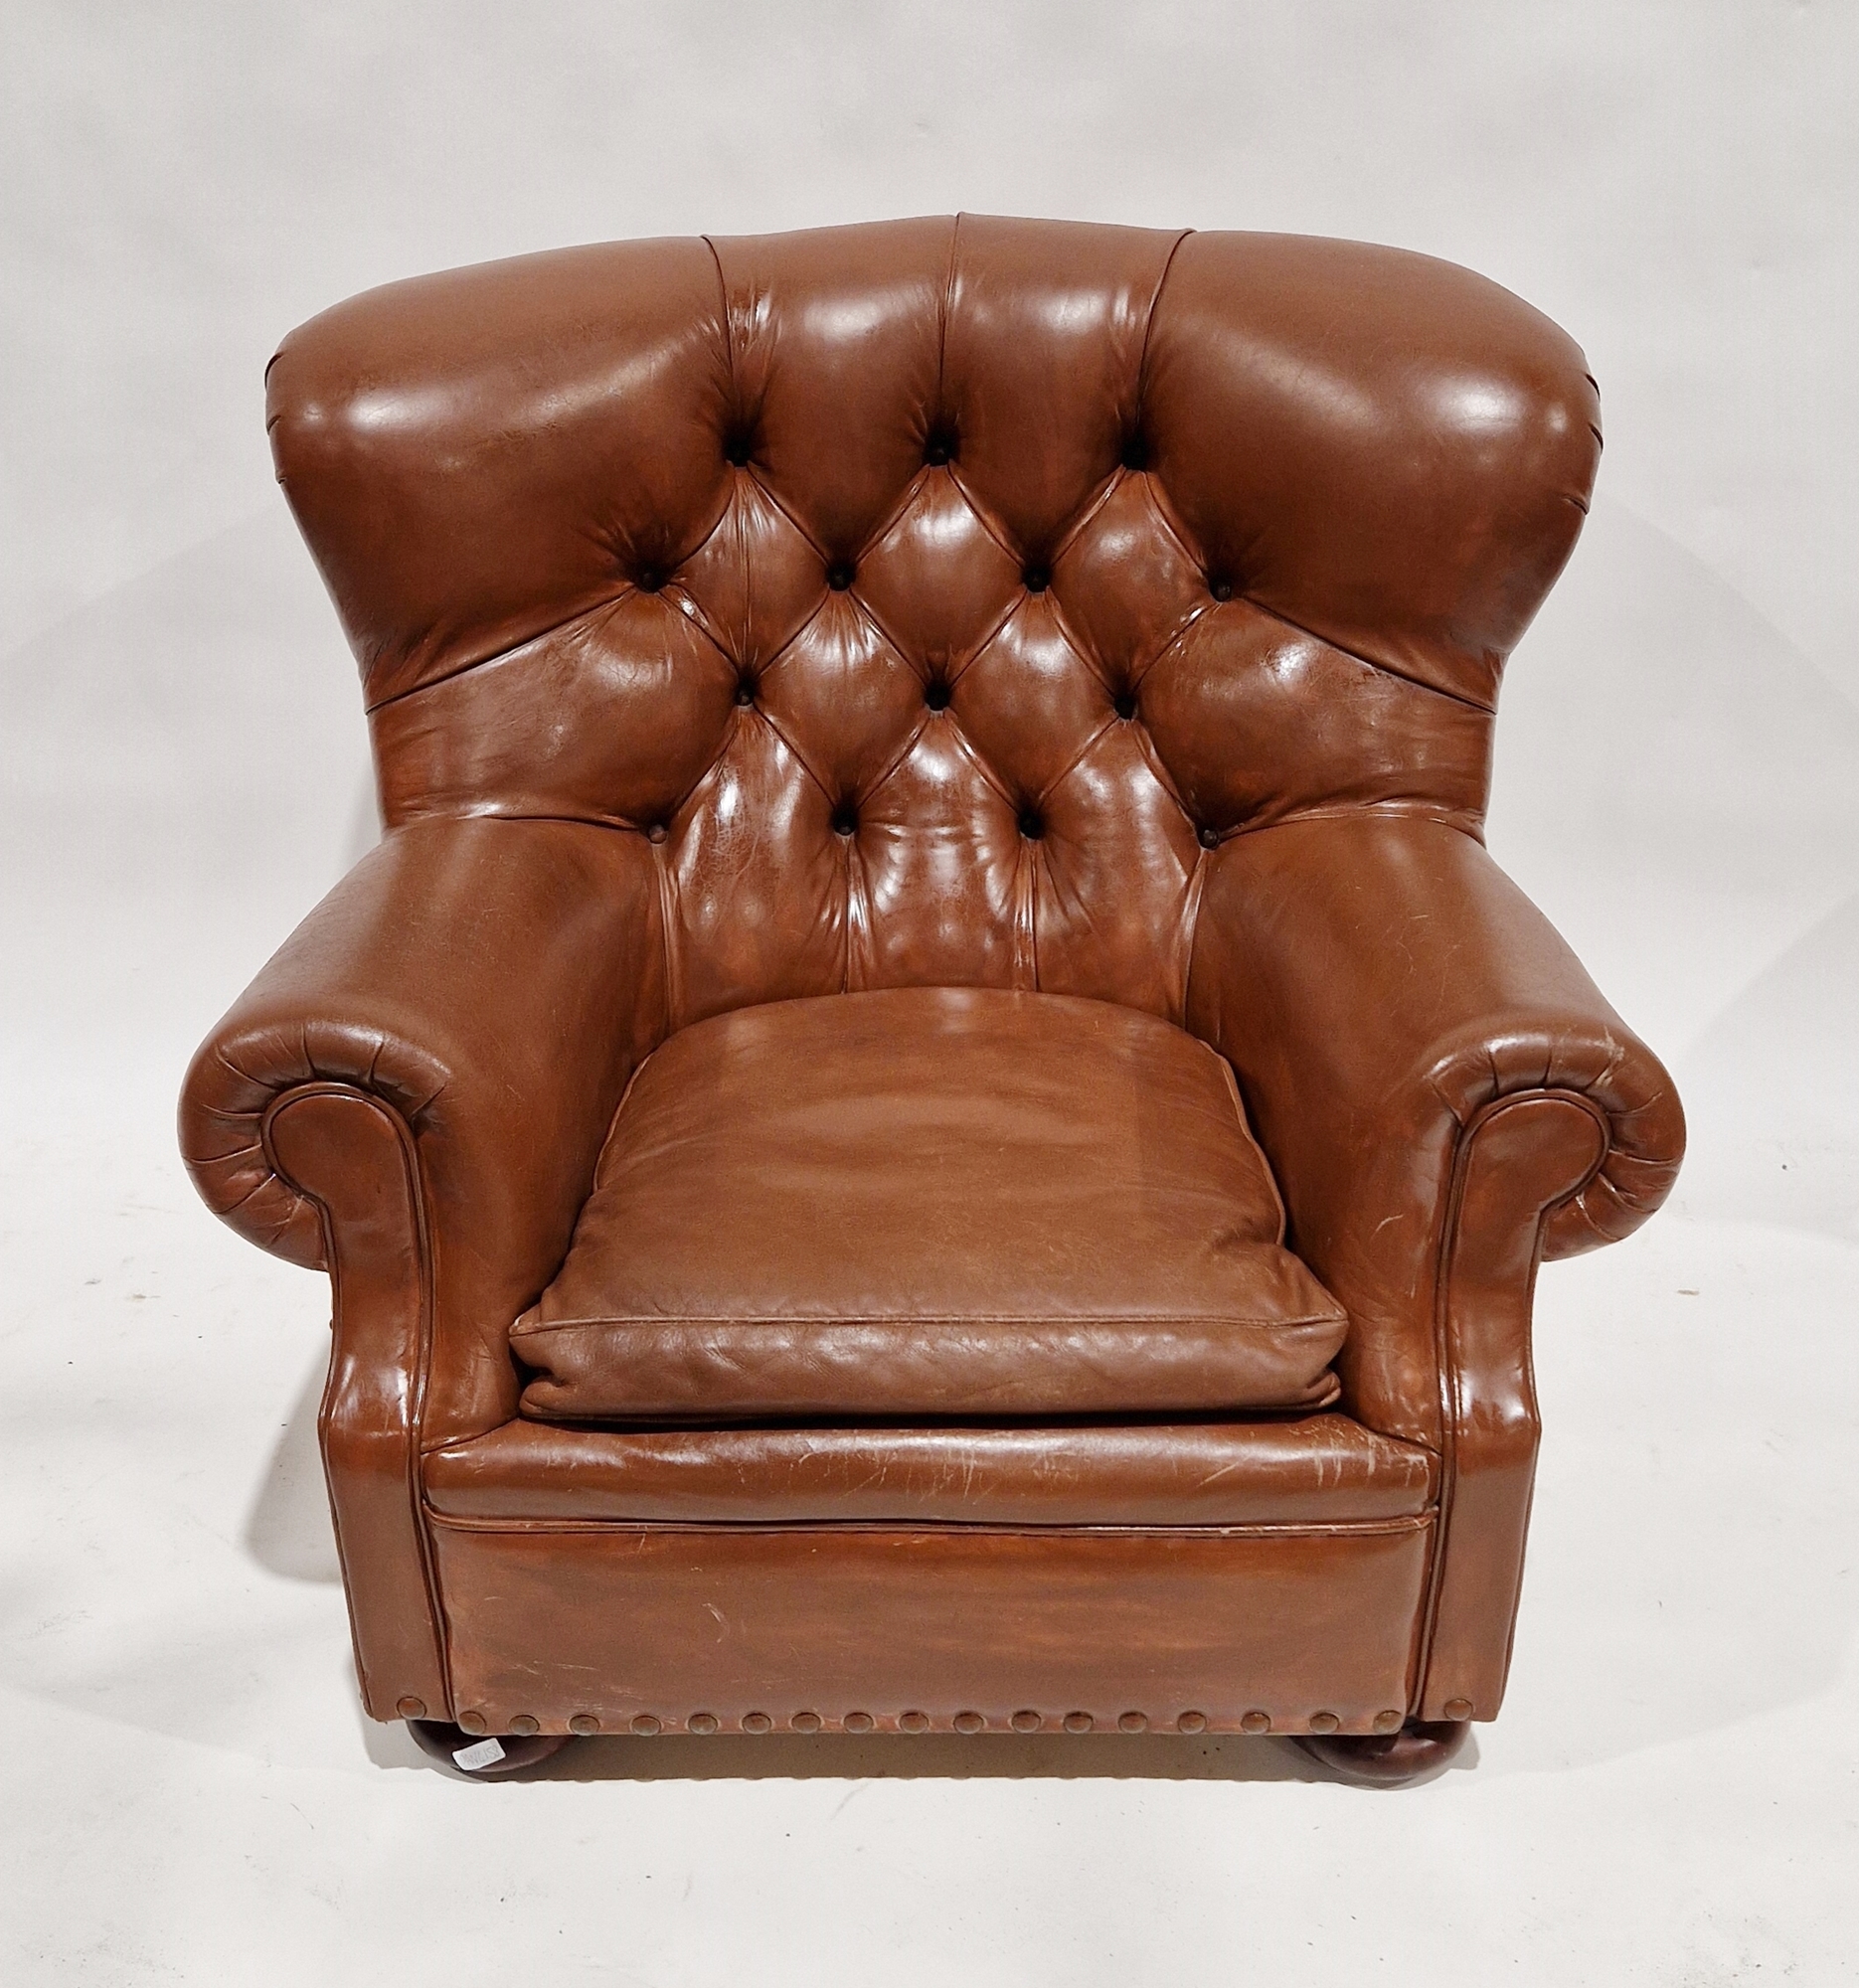 Ralph Lauren leather button back writer's armchair, on bun feet, 96cm high